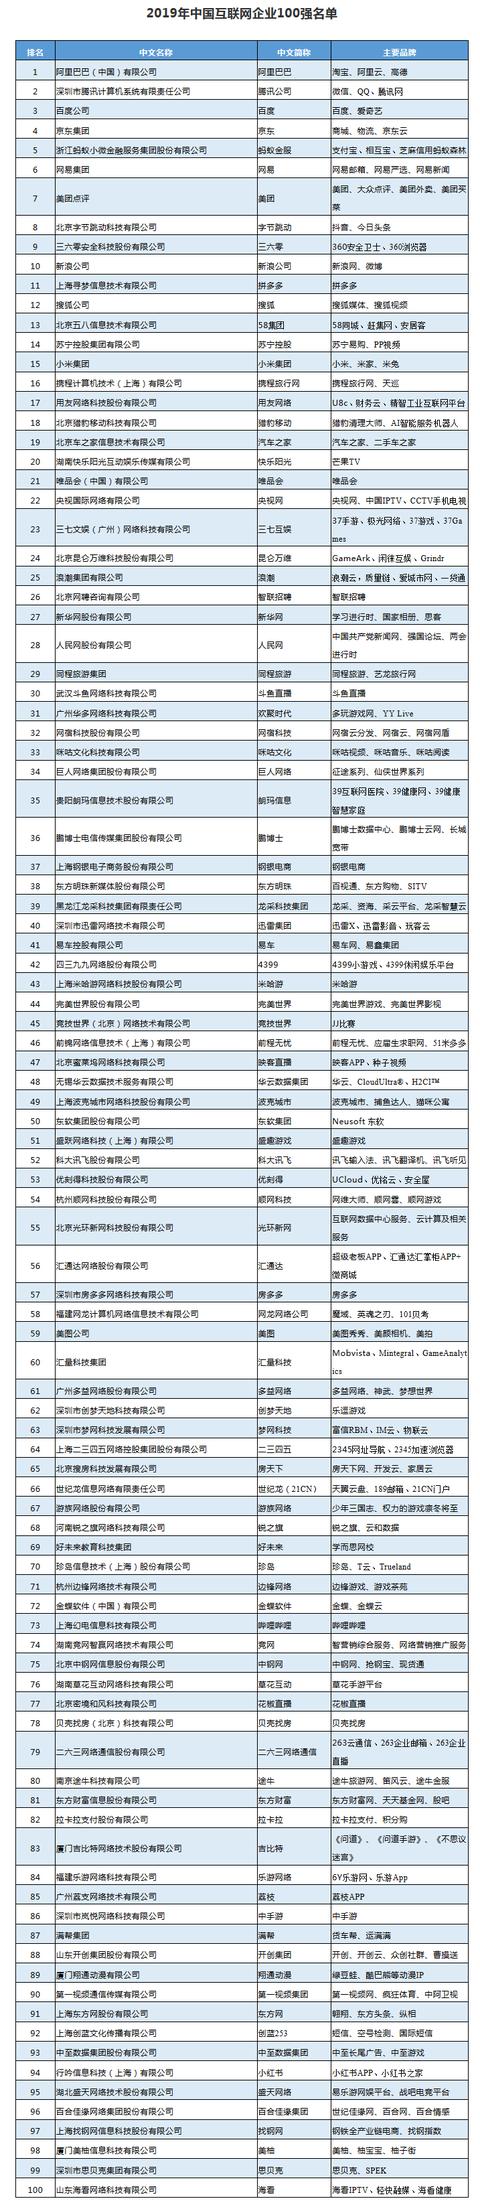 2019年中国互联网百强企业排行榜